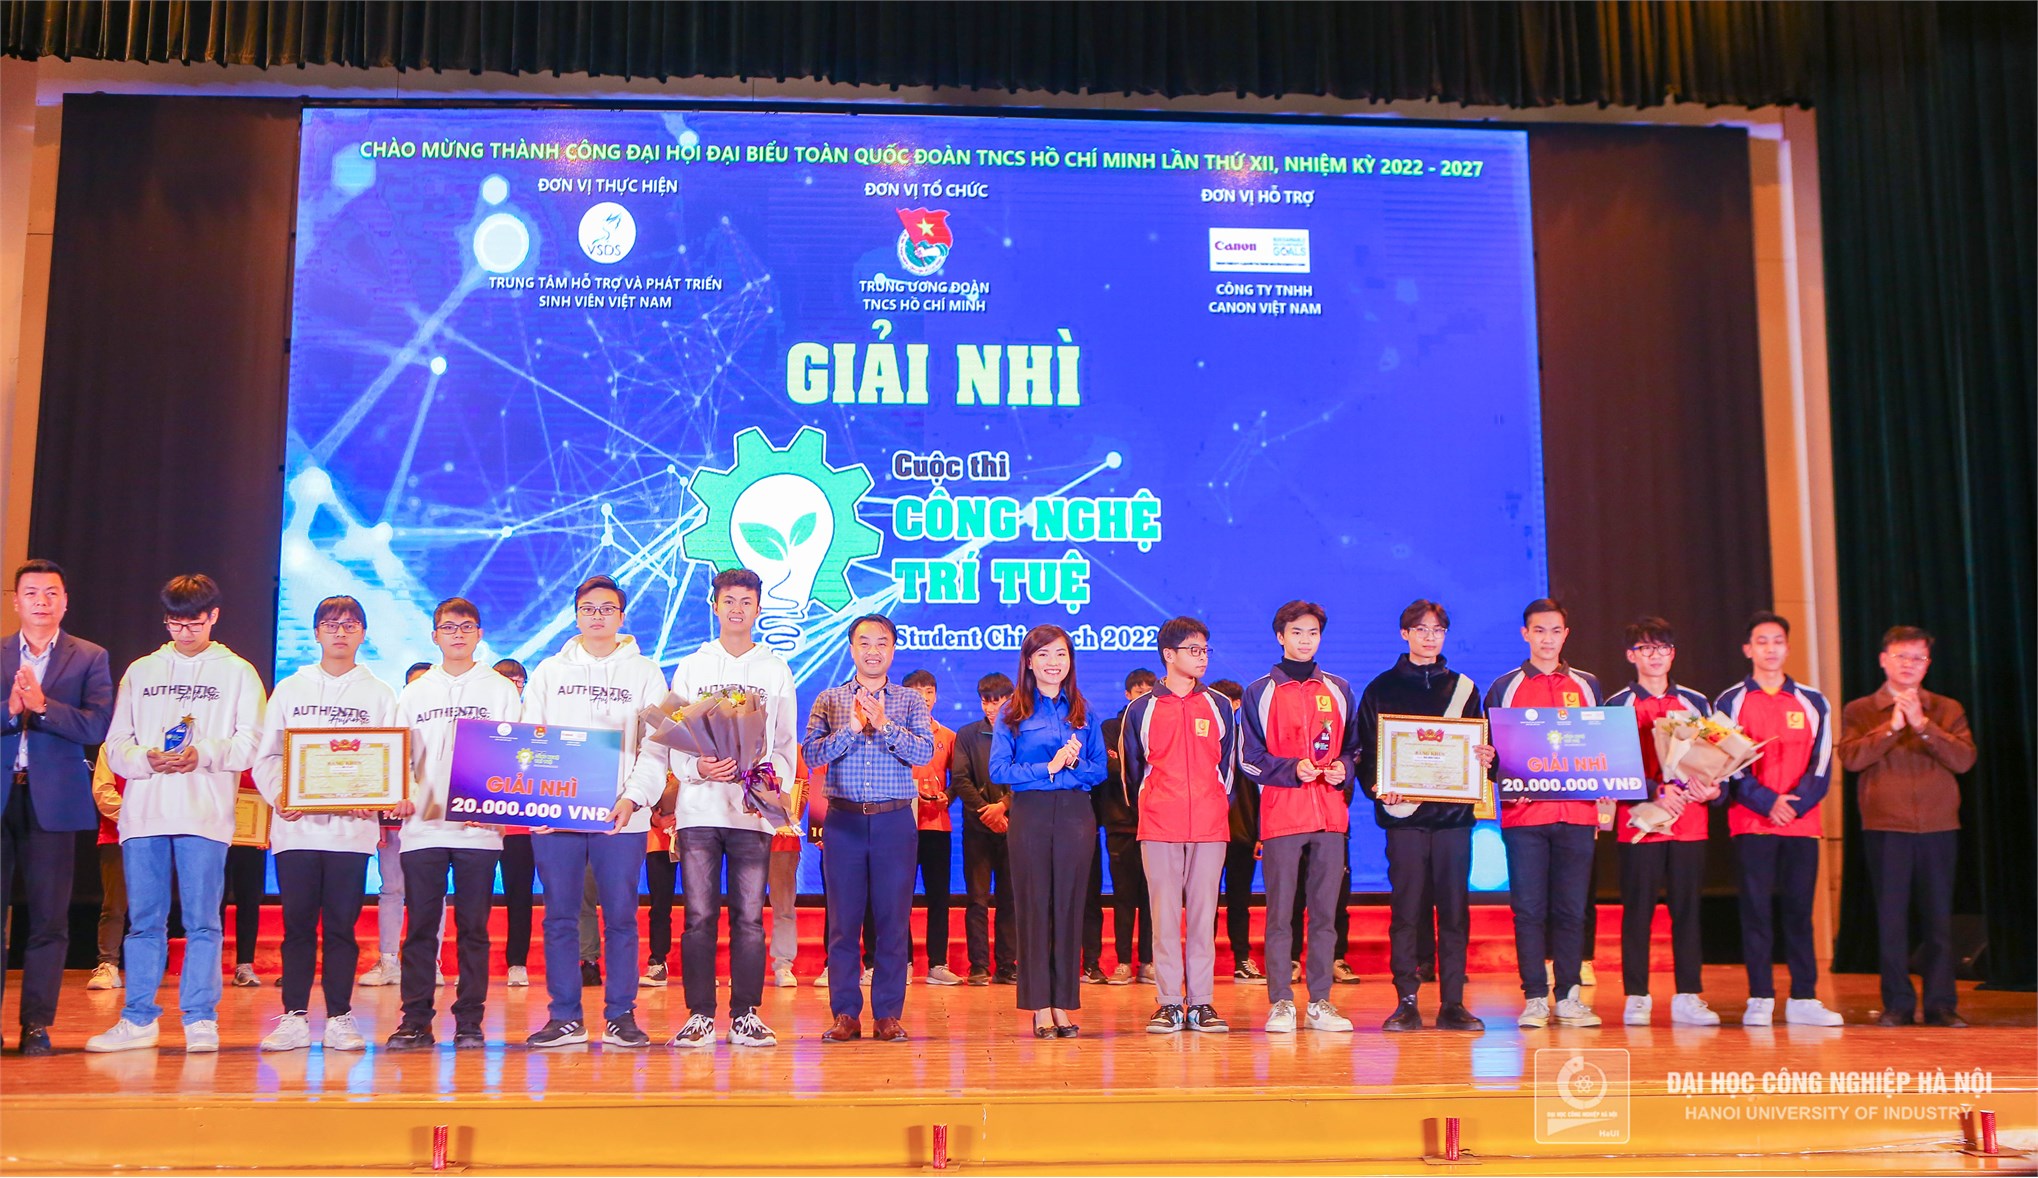 Sinh viên Đại học Công nghiệp Hà Nội đoạt giải Nhì cuộc thi “Công nghệ trí tuệ Student Chie-Tech” năm 2022